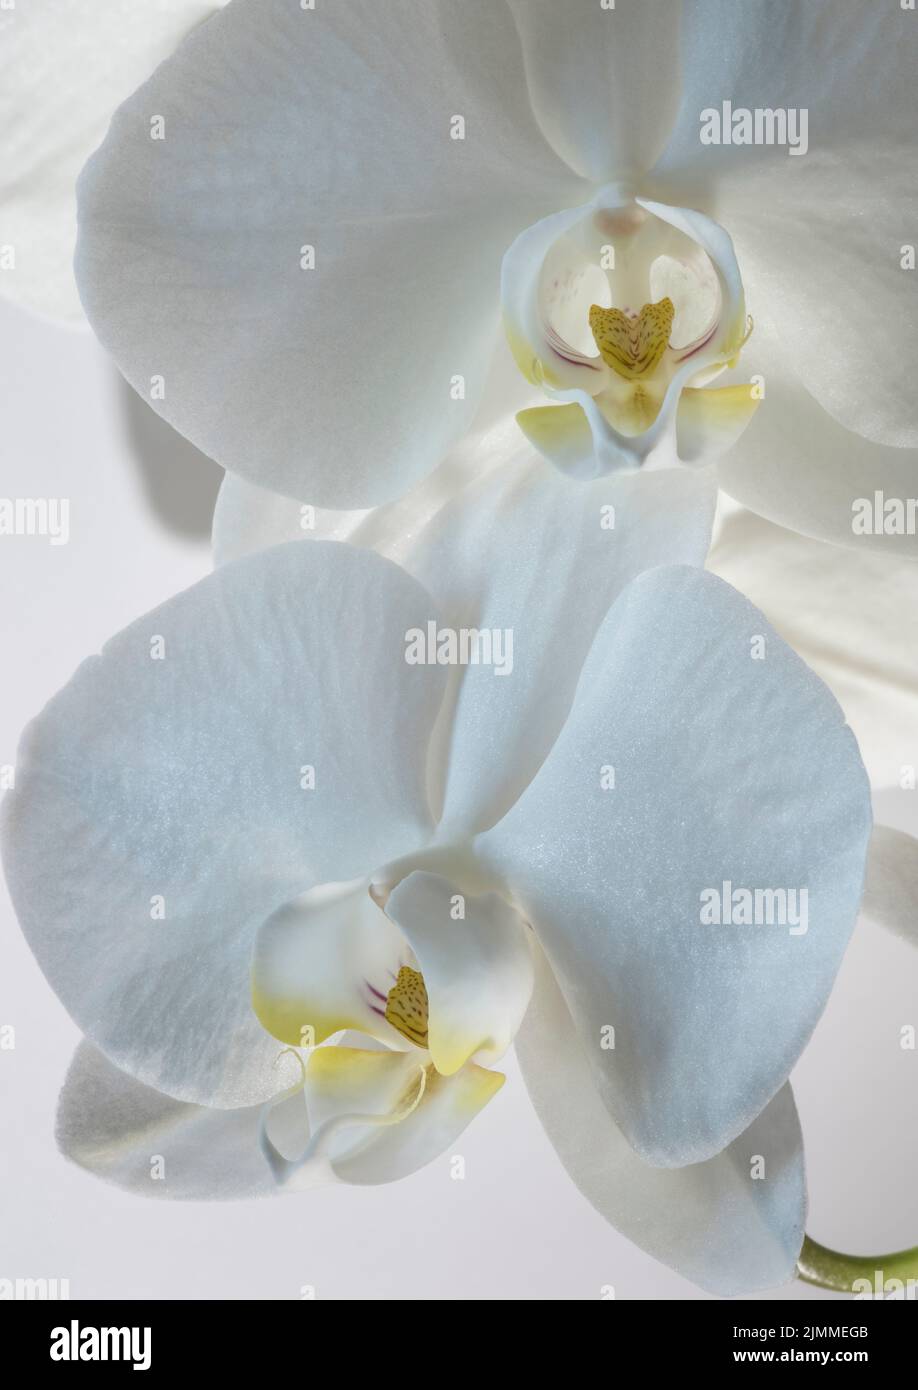 Immagine di primo piano di due fiori di orchidea bianca coltivati con centri gialli su sfondo bianco. Foto Stock